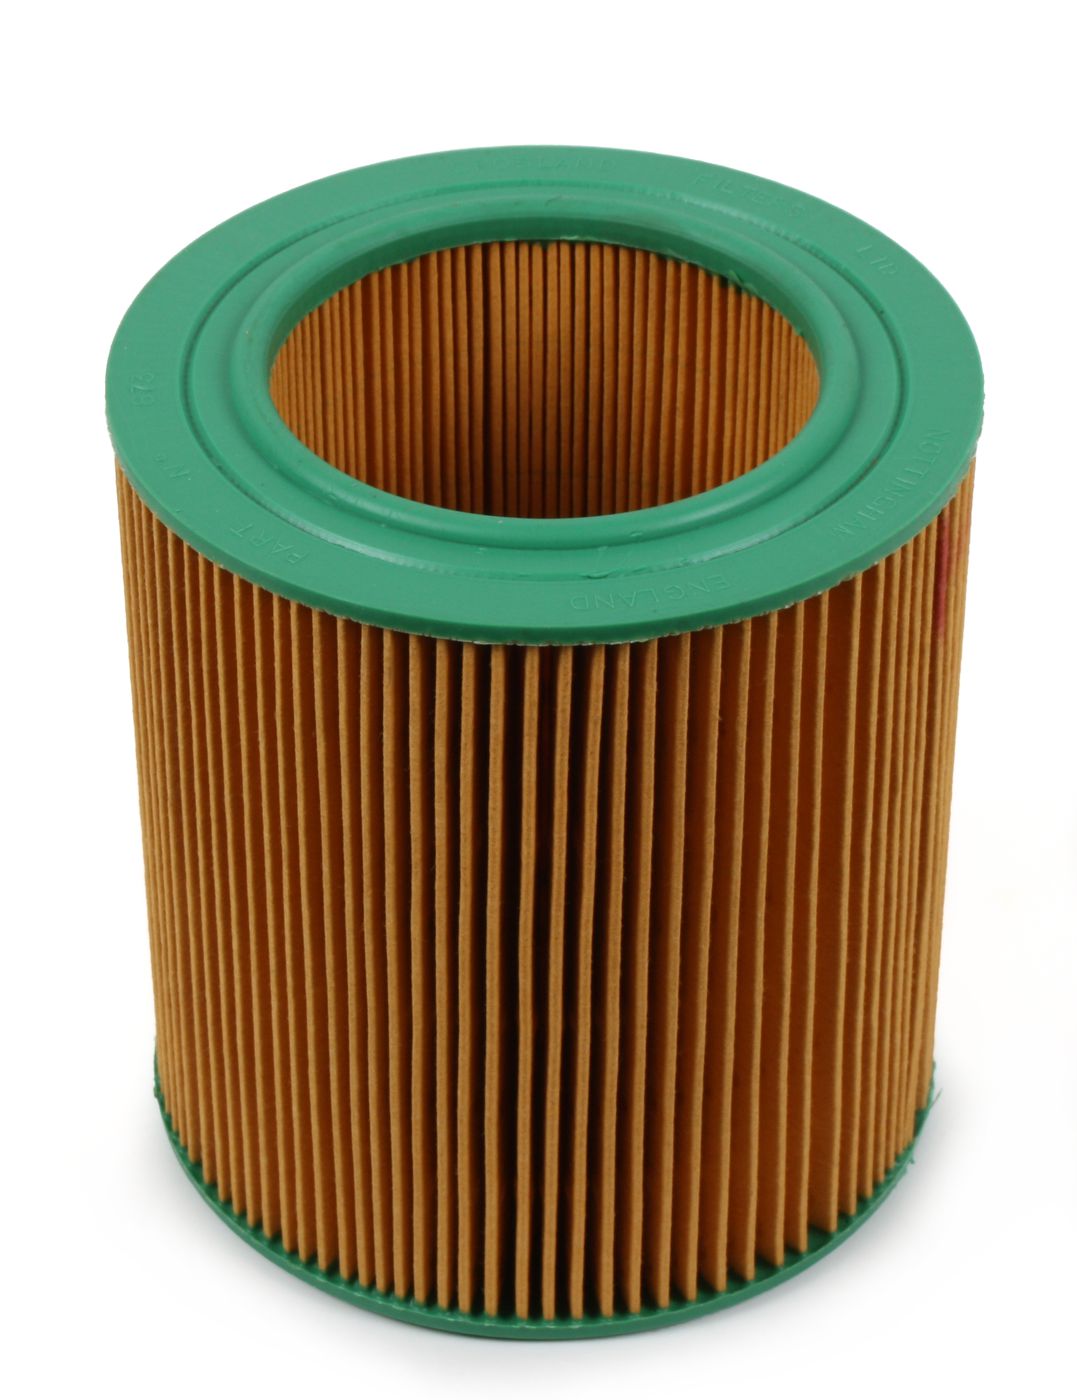 Luftfilter
Air filter
Filtre à air
Filtr powietrza
Luchtfilter
